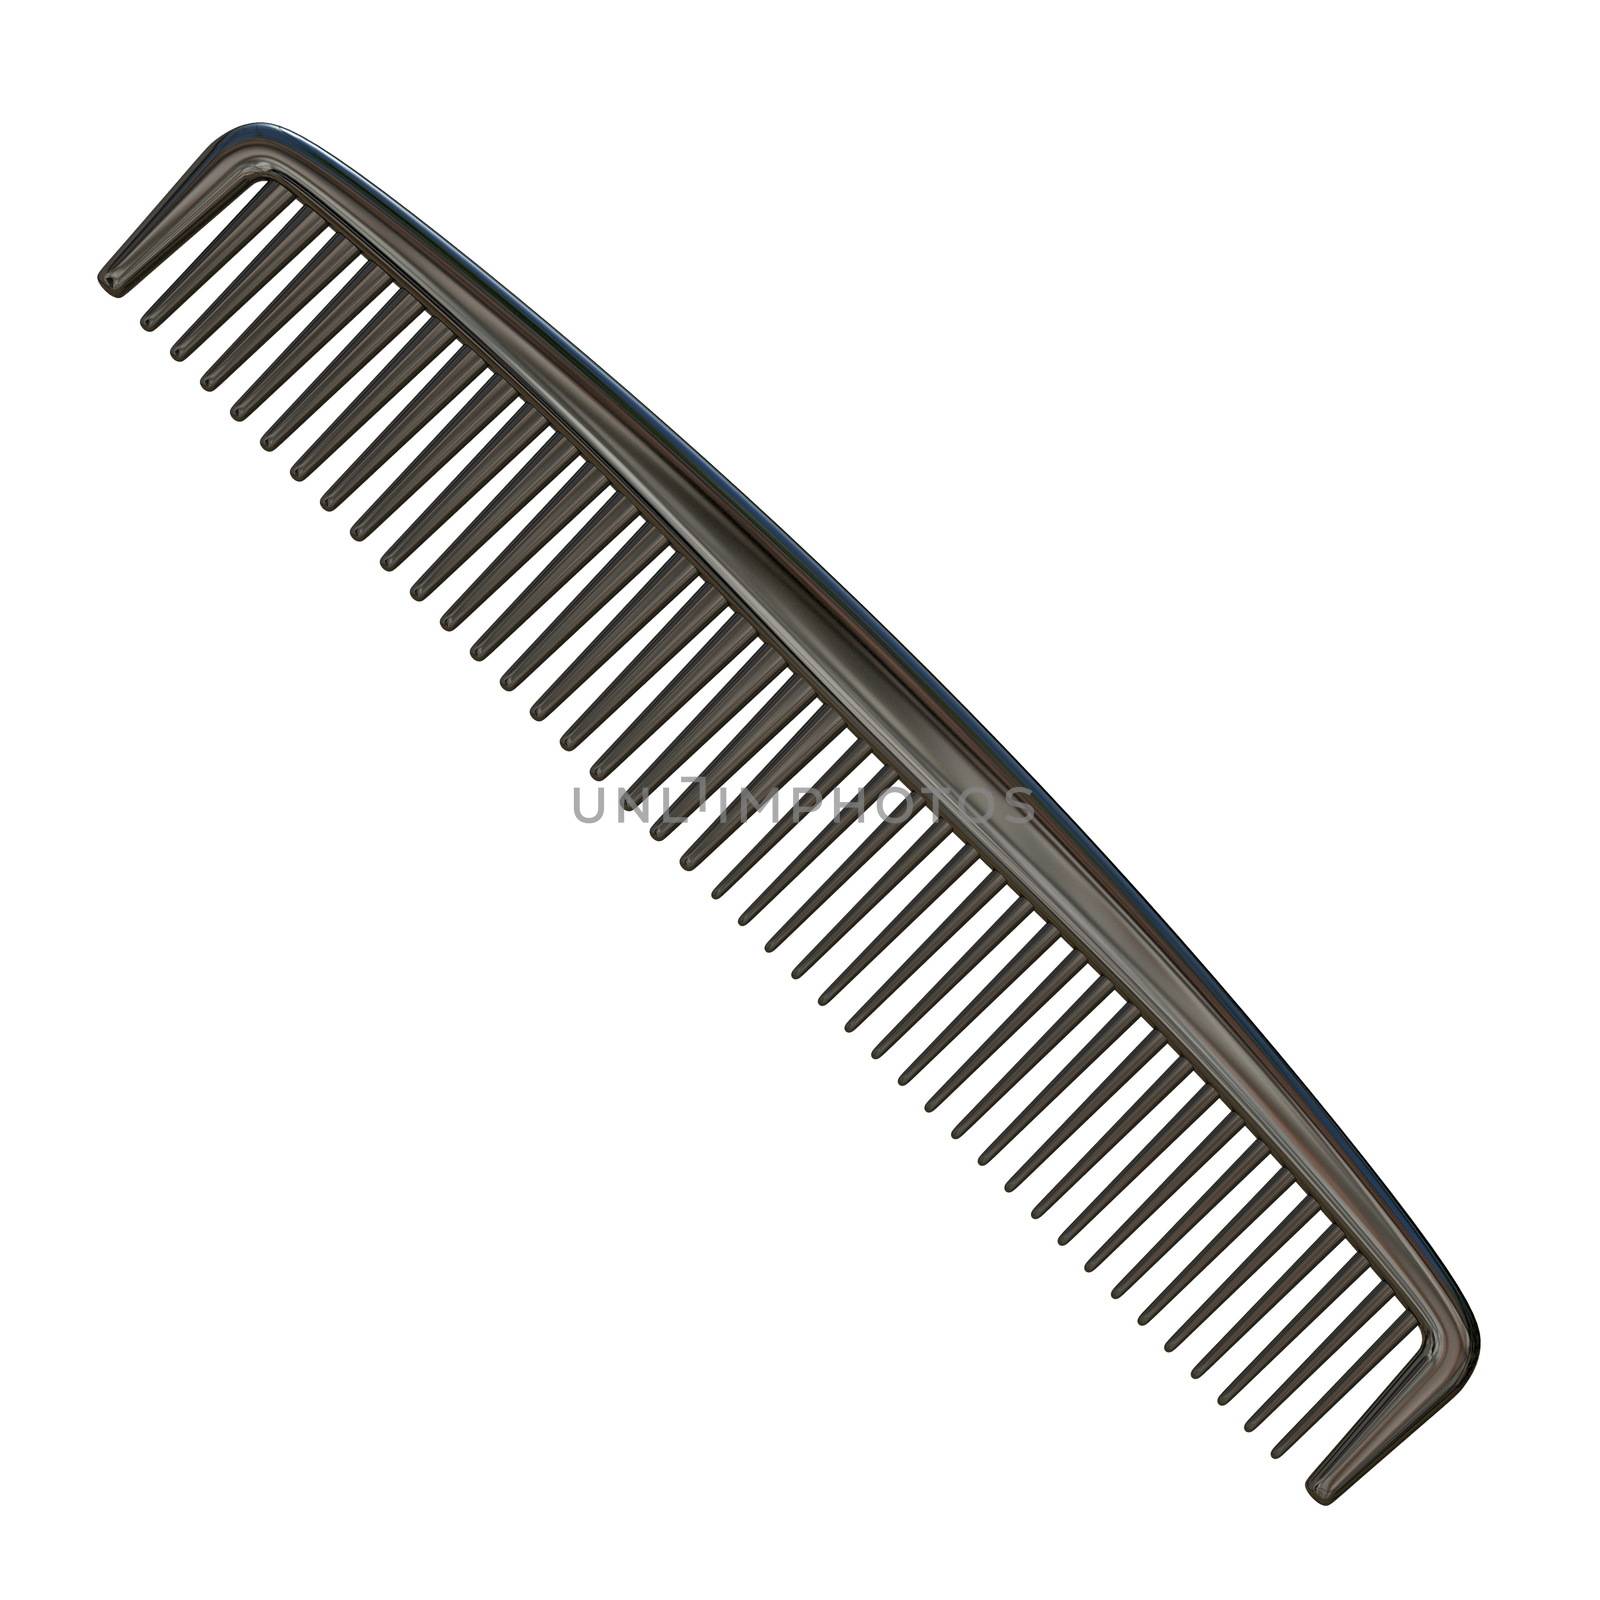 Plastic comb 3D by djmilic